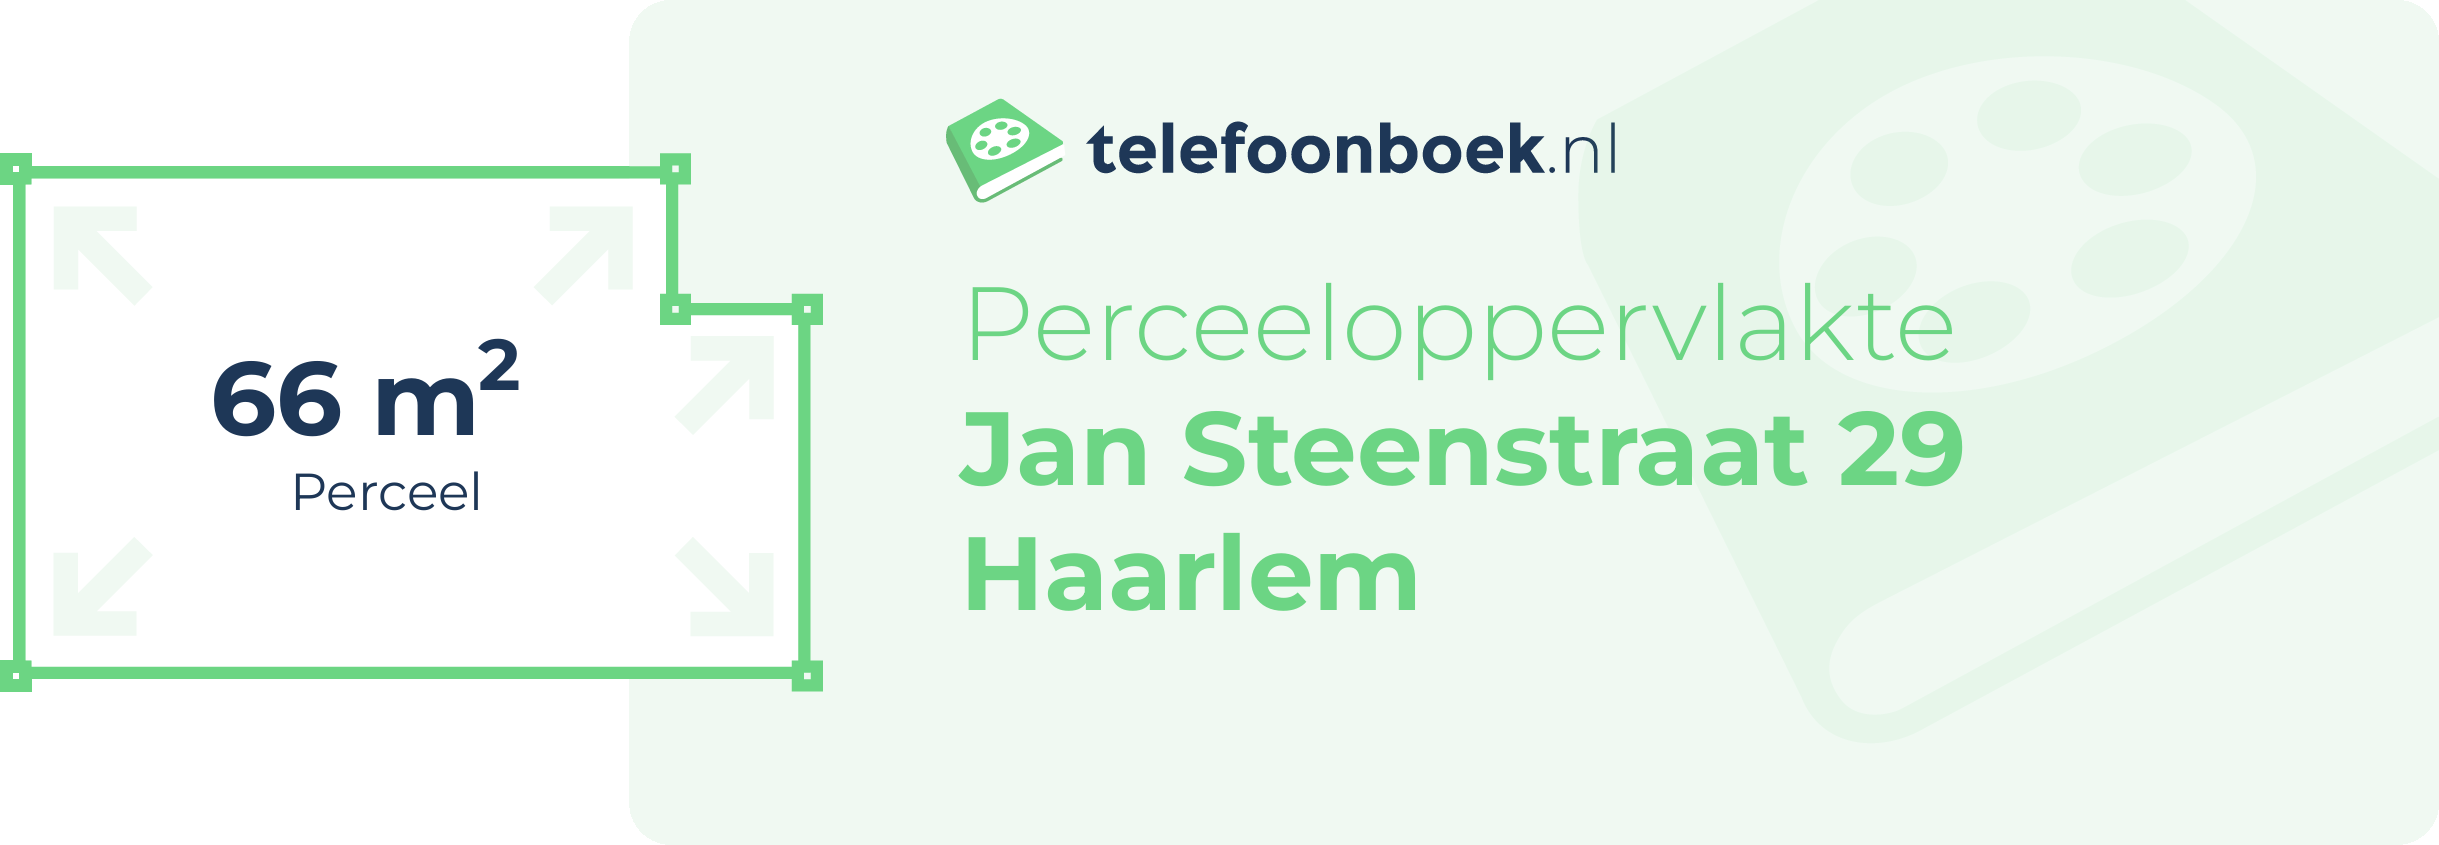 Perceeloppervlakte Jan Steenstraat 29 Haarlem